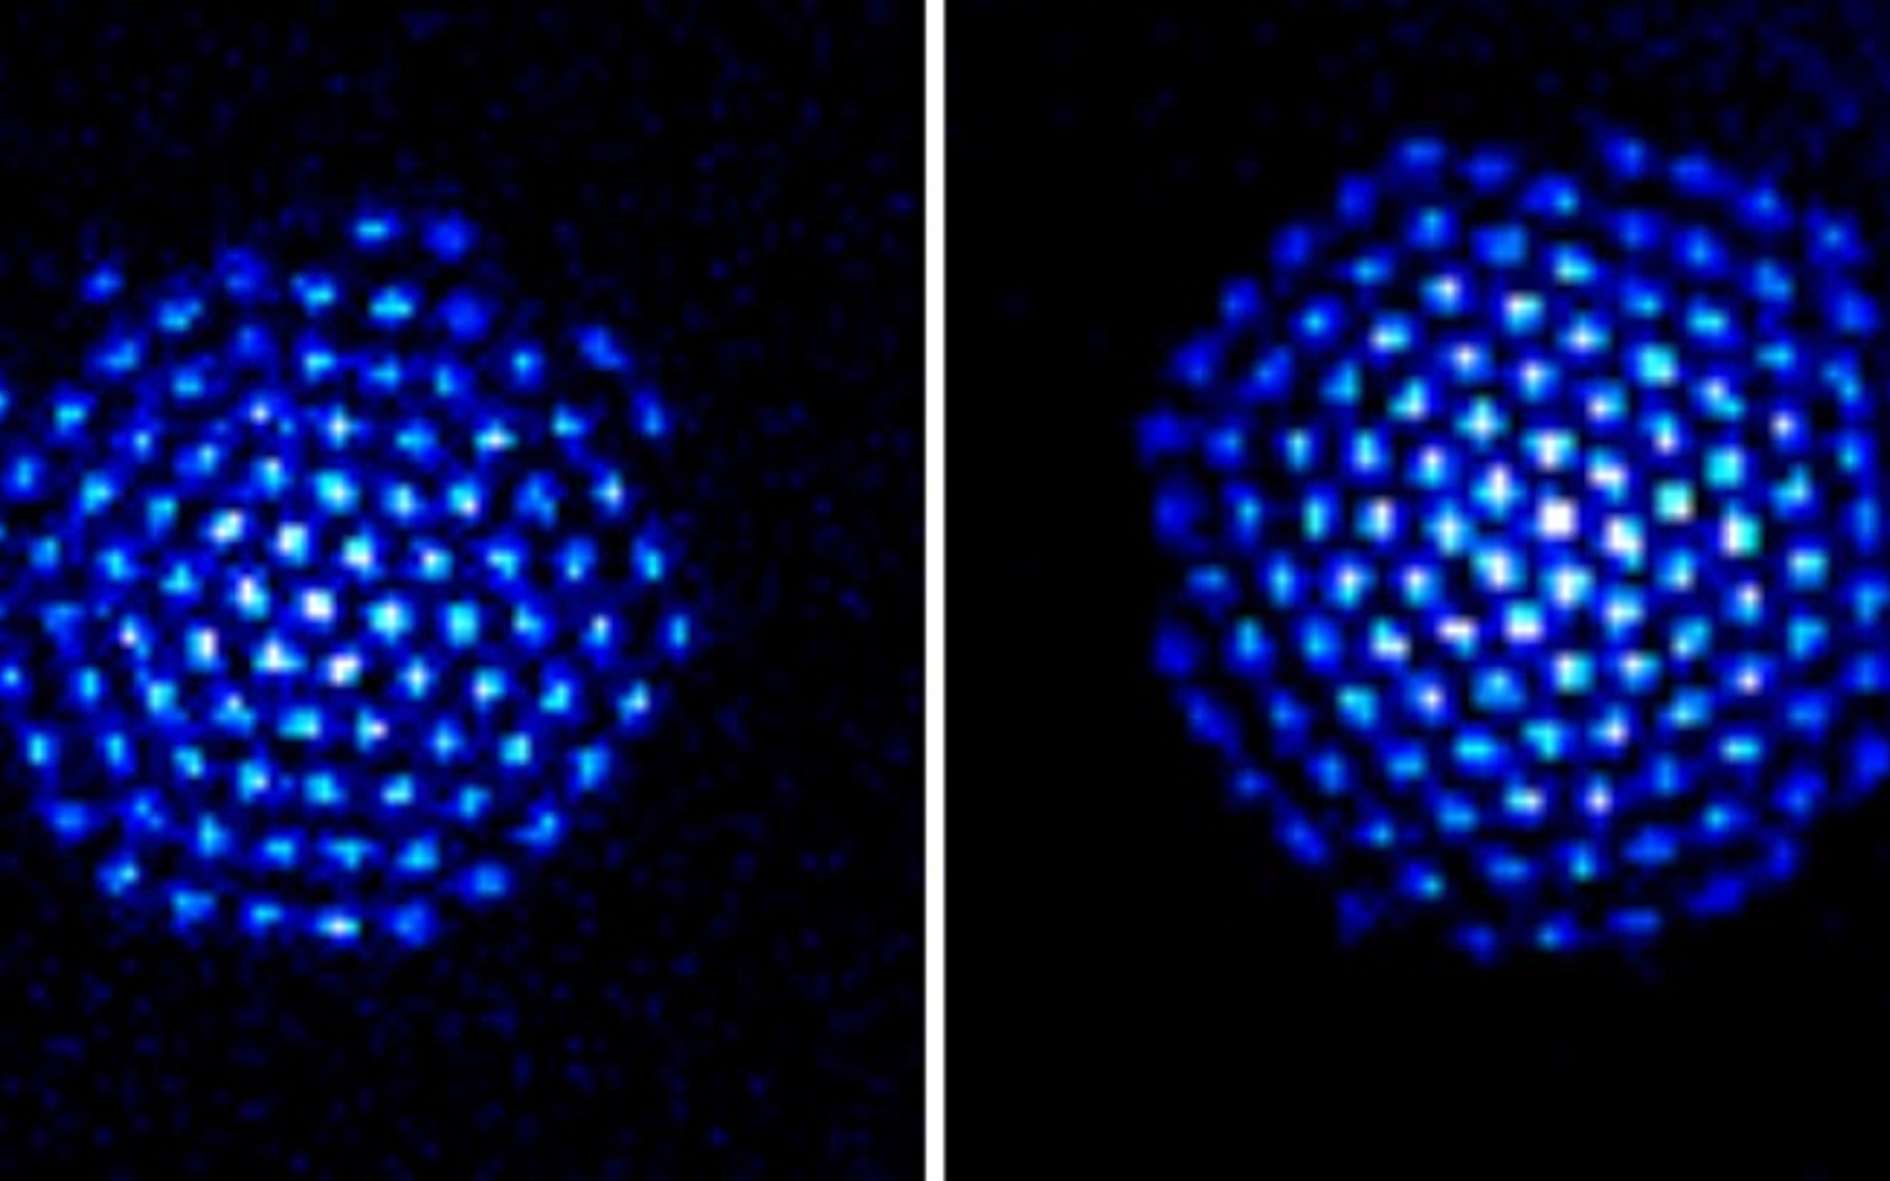 Les ions de béryllium, rendus visibles par fluorescence sur cette image (il est possible d'en distinguer 91 à gauche et 124 à droite), forment un réseau cristallin de maille triangulaire. Ils constituent un simulateur quantique et ouvrent une nouvelle voie pour obtenir peut-être un jour au moins un calculateur quantique. © NIST